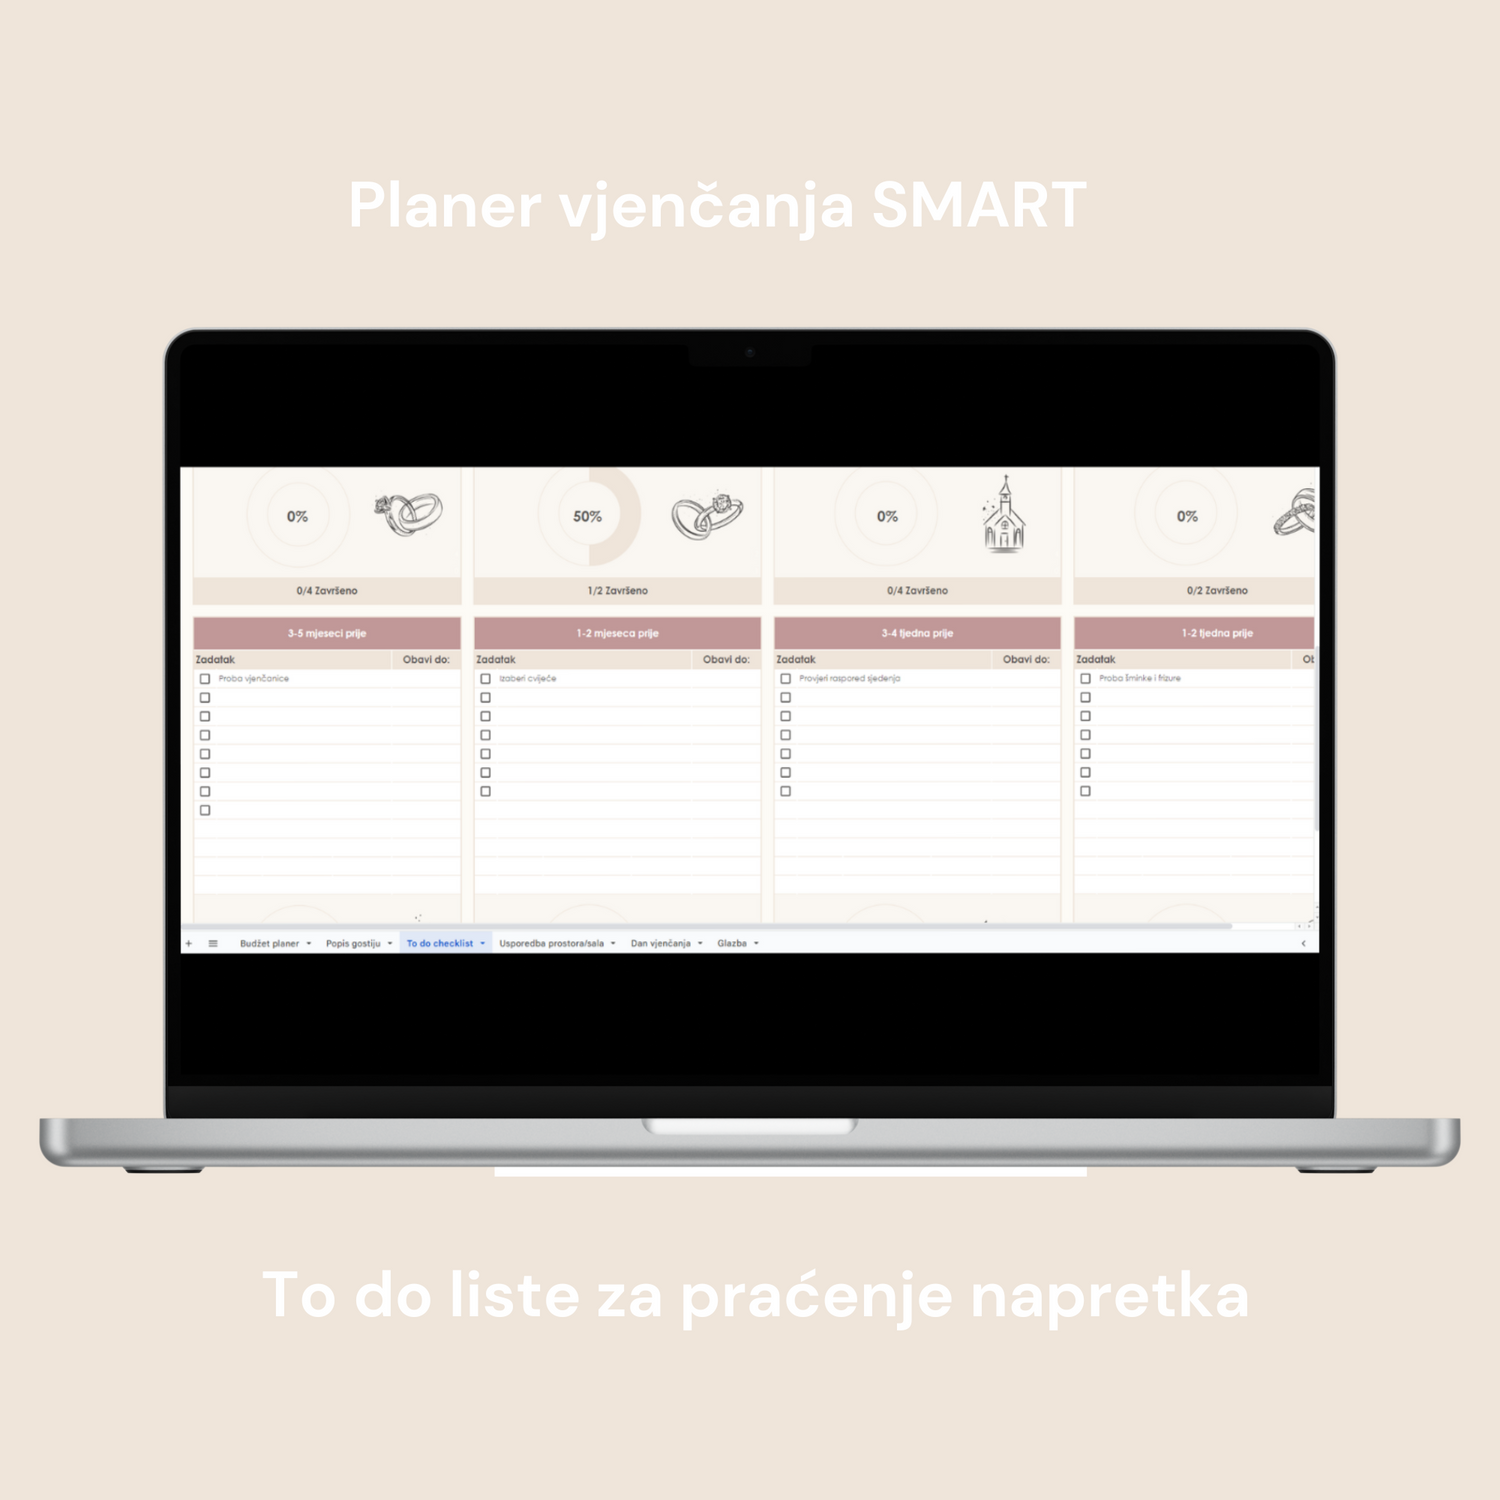 Planer vjenčanja SMART digitalni planer za google doc, to do liste za praćenje obavljenih zadataka i napretka sa ilustracijama